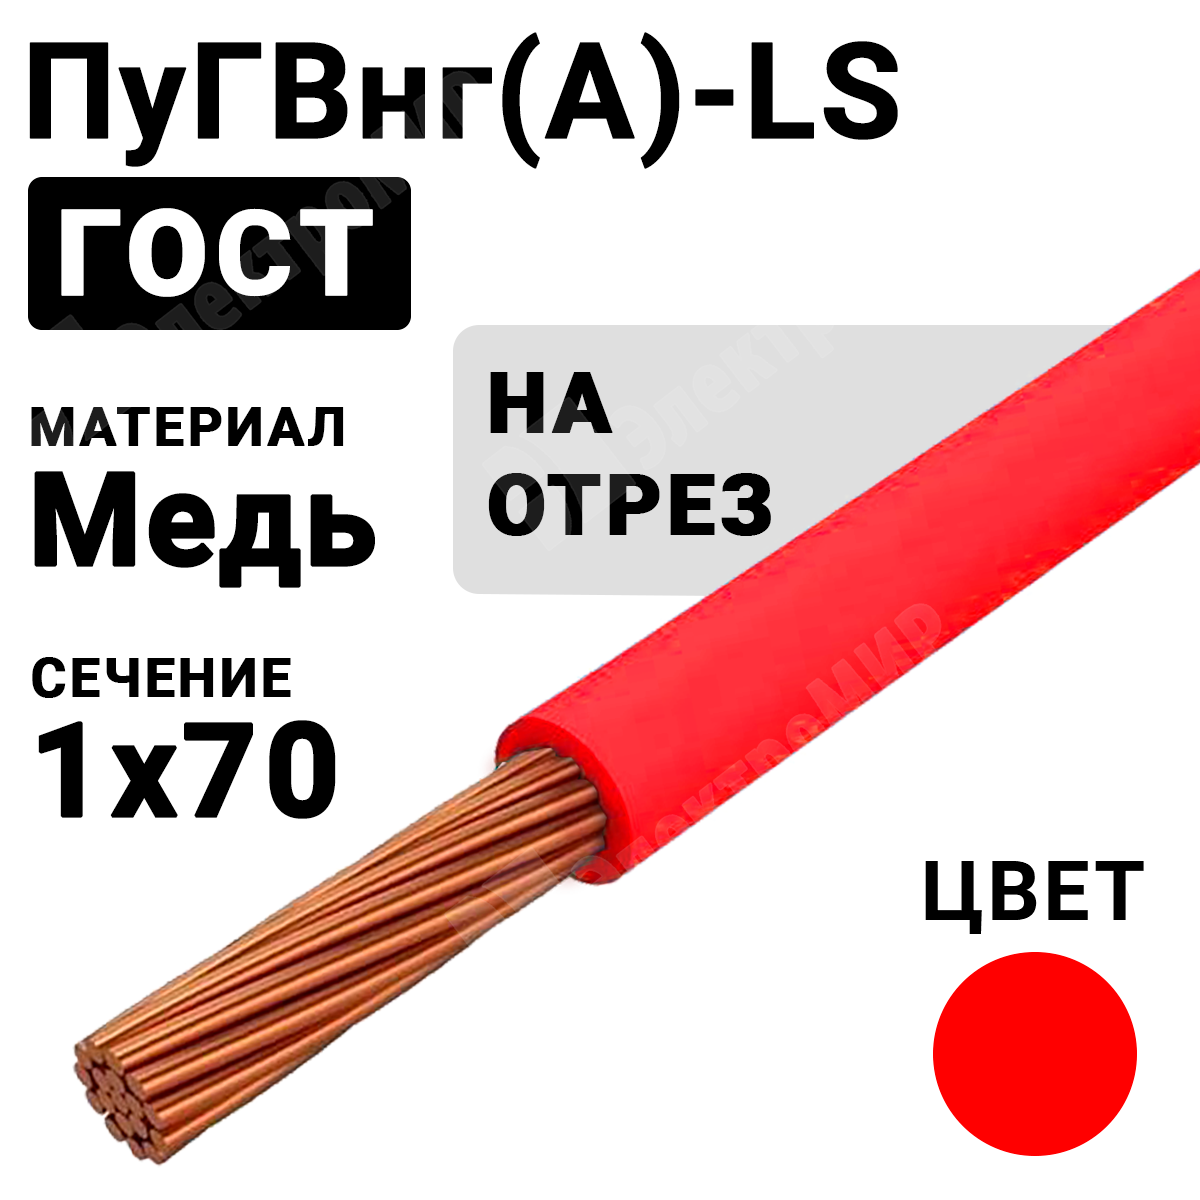 Гост красного цвета. ПУГВНГ(А)-LS 1х25. ПУГВНГ 1=25. Провод монтажный. Провод ПУГВНГ двухжильный 4 кв мм.